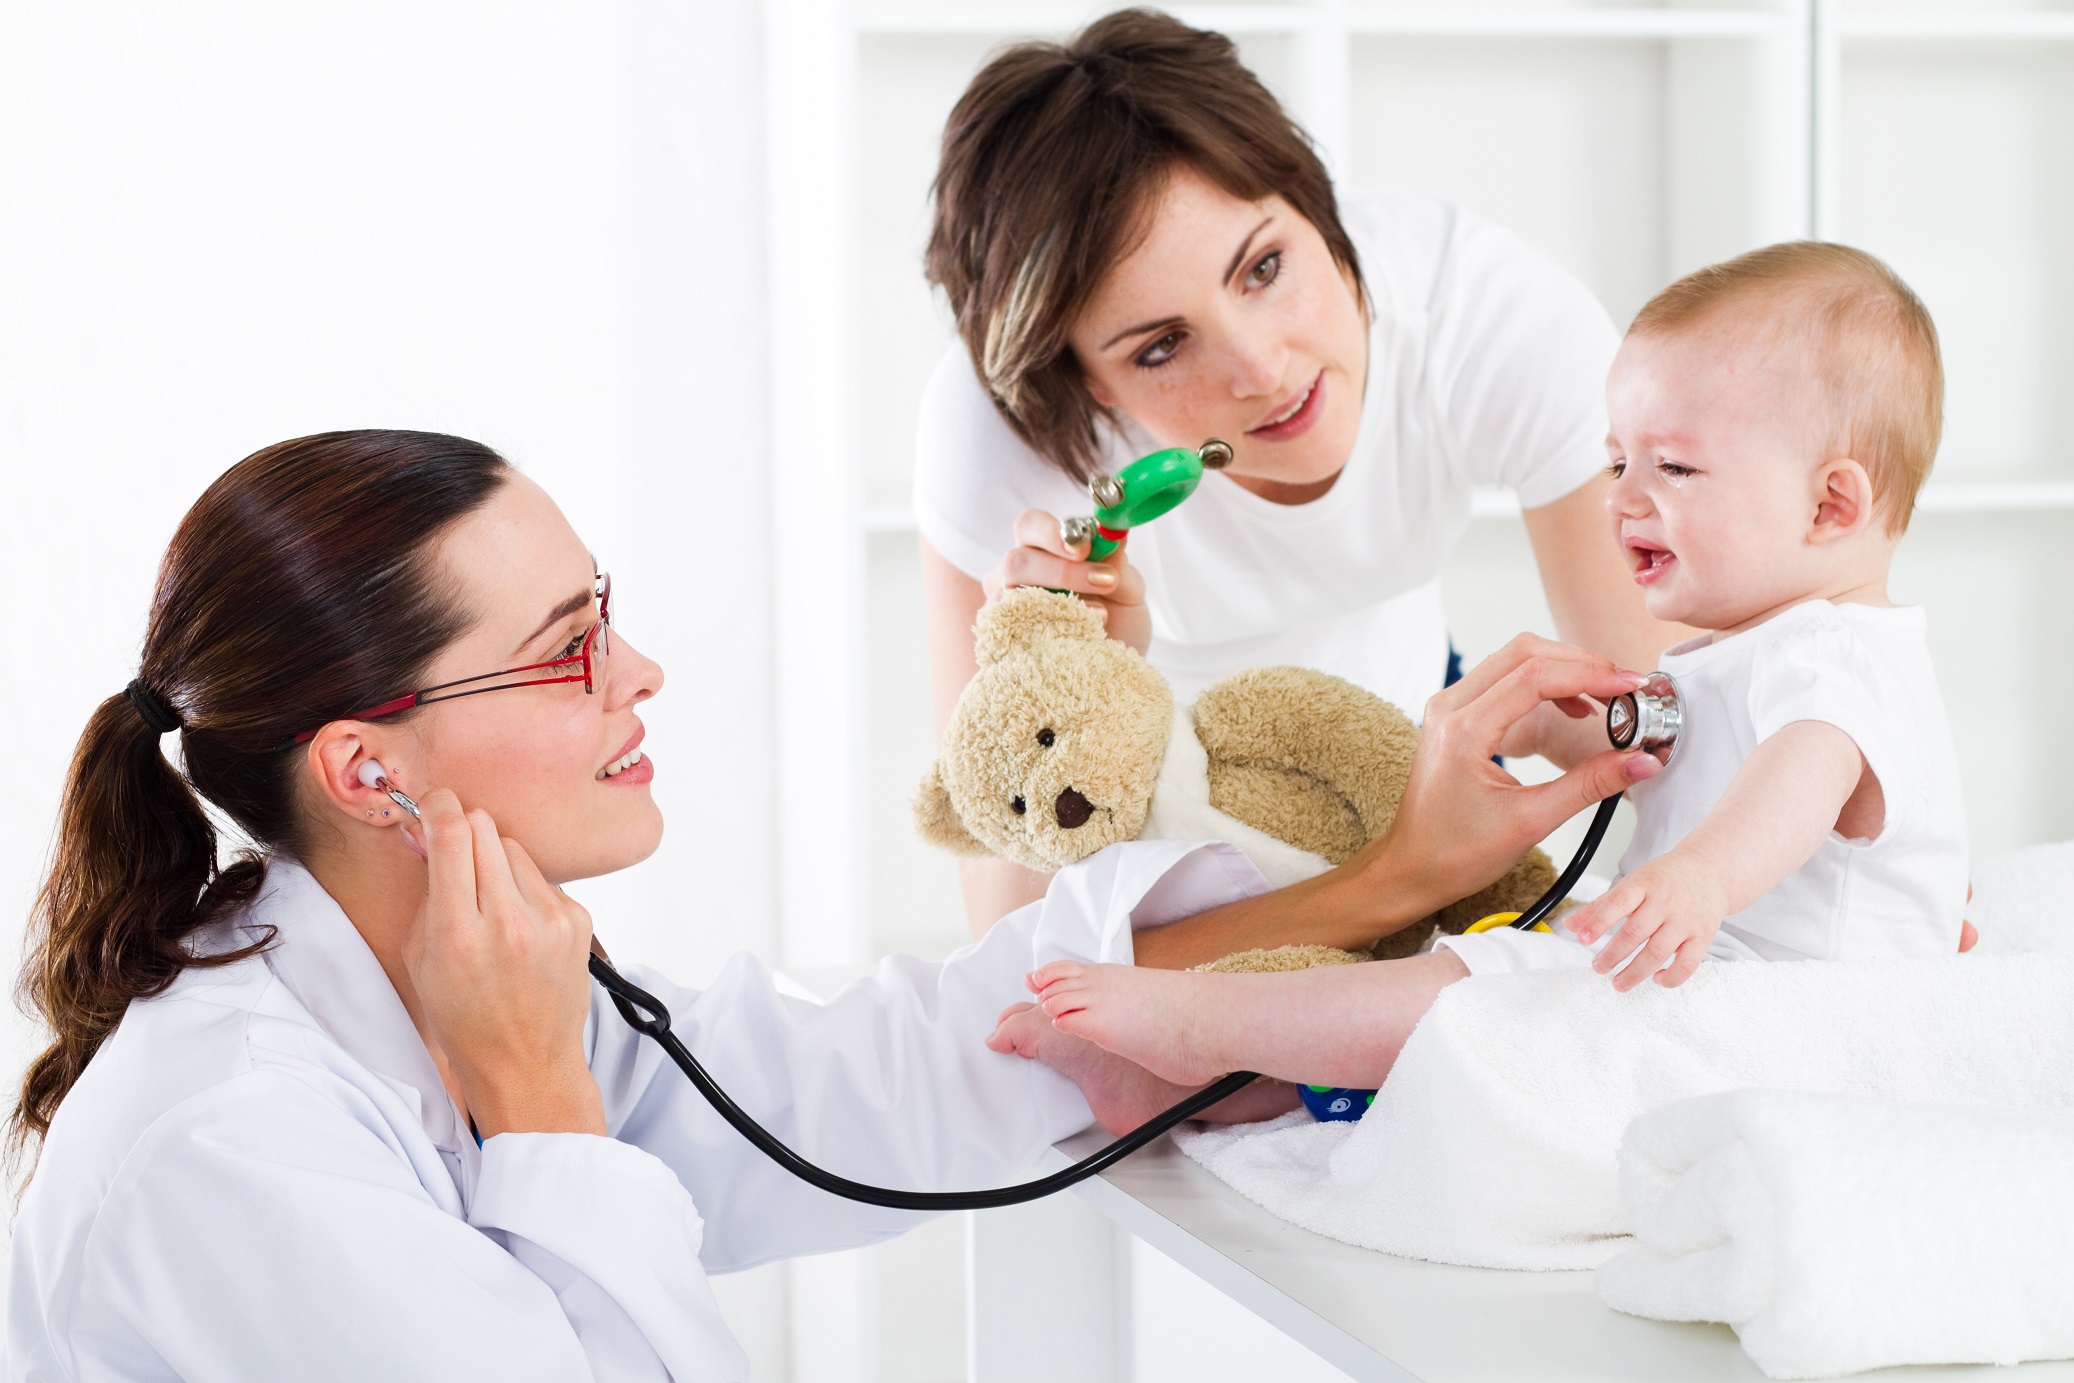 Роль педиатра развития на первичном знакомстве с ребенком и семьей